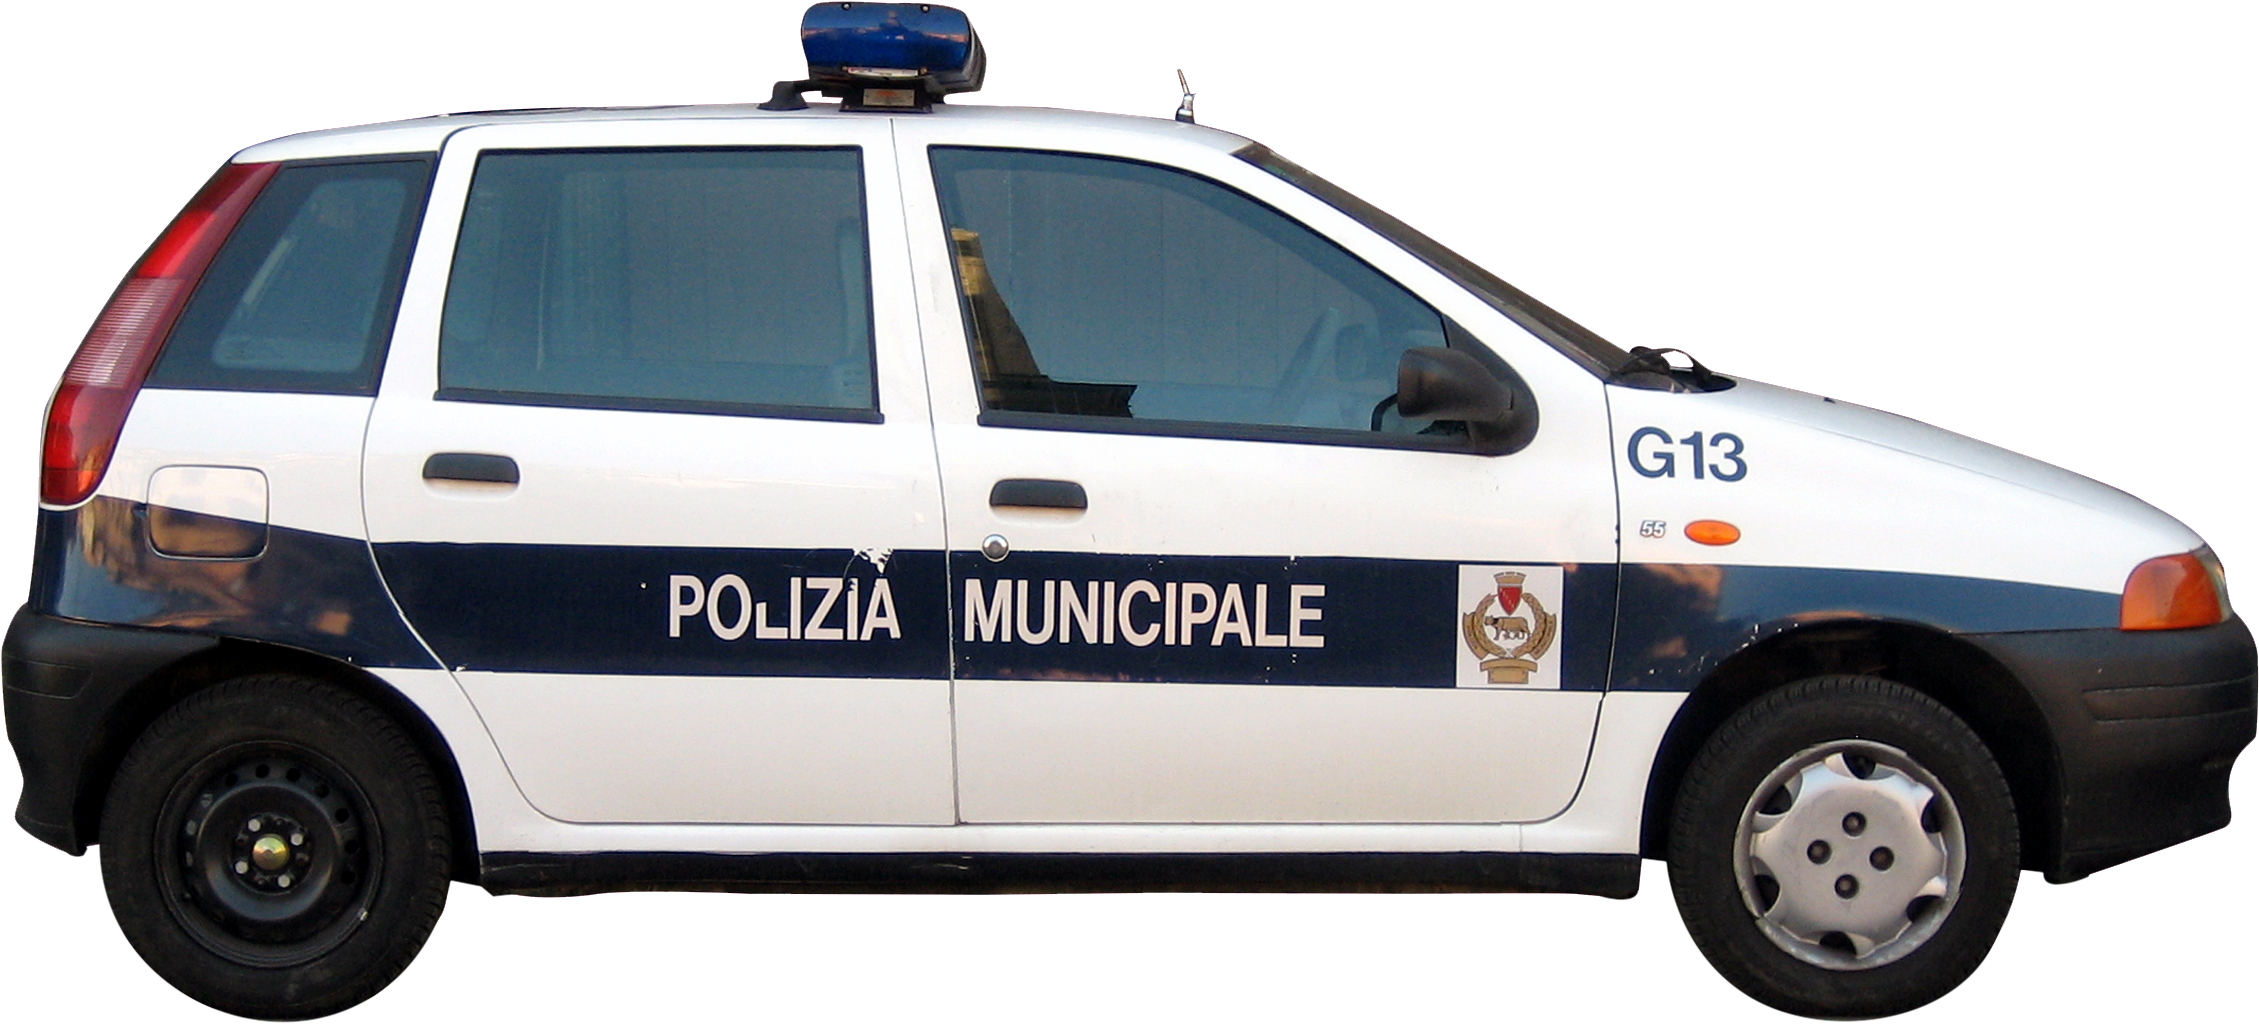 Police Car - Police (2258x2258)